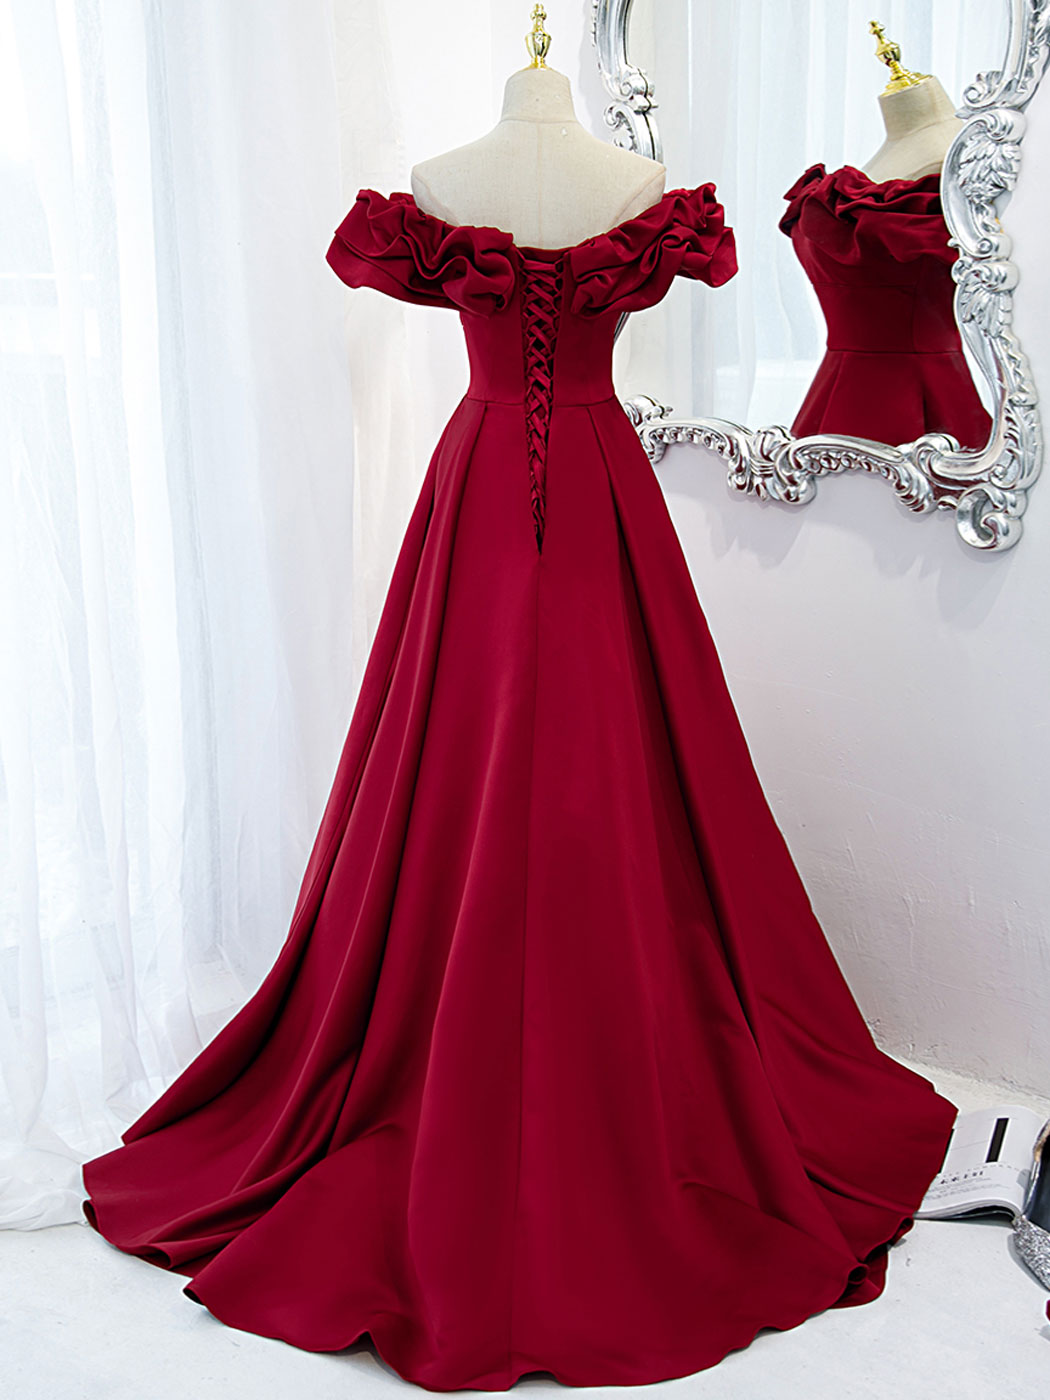 Prom Dress Style, Burgundy Off Shoulder Satin Long Prom Dress, Burgundy Formal Evening Dress